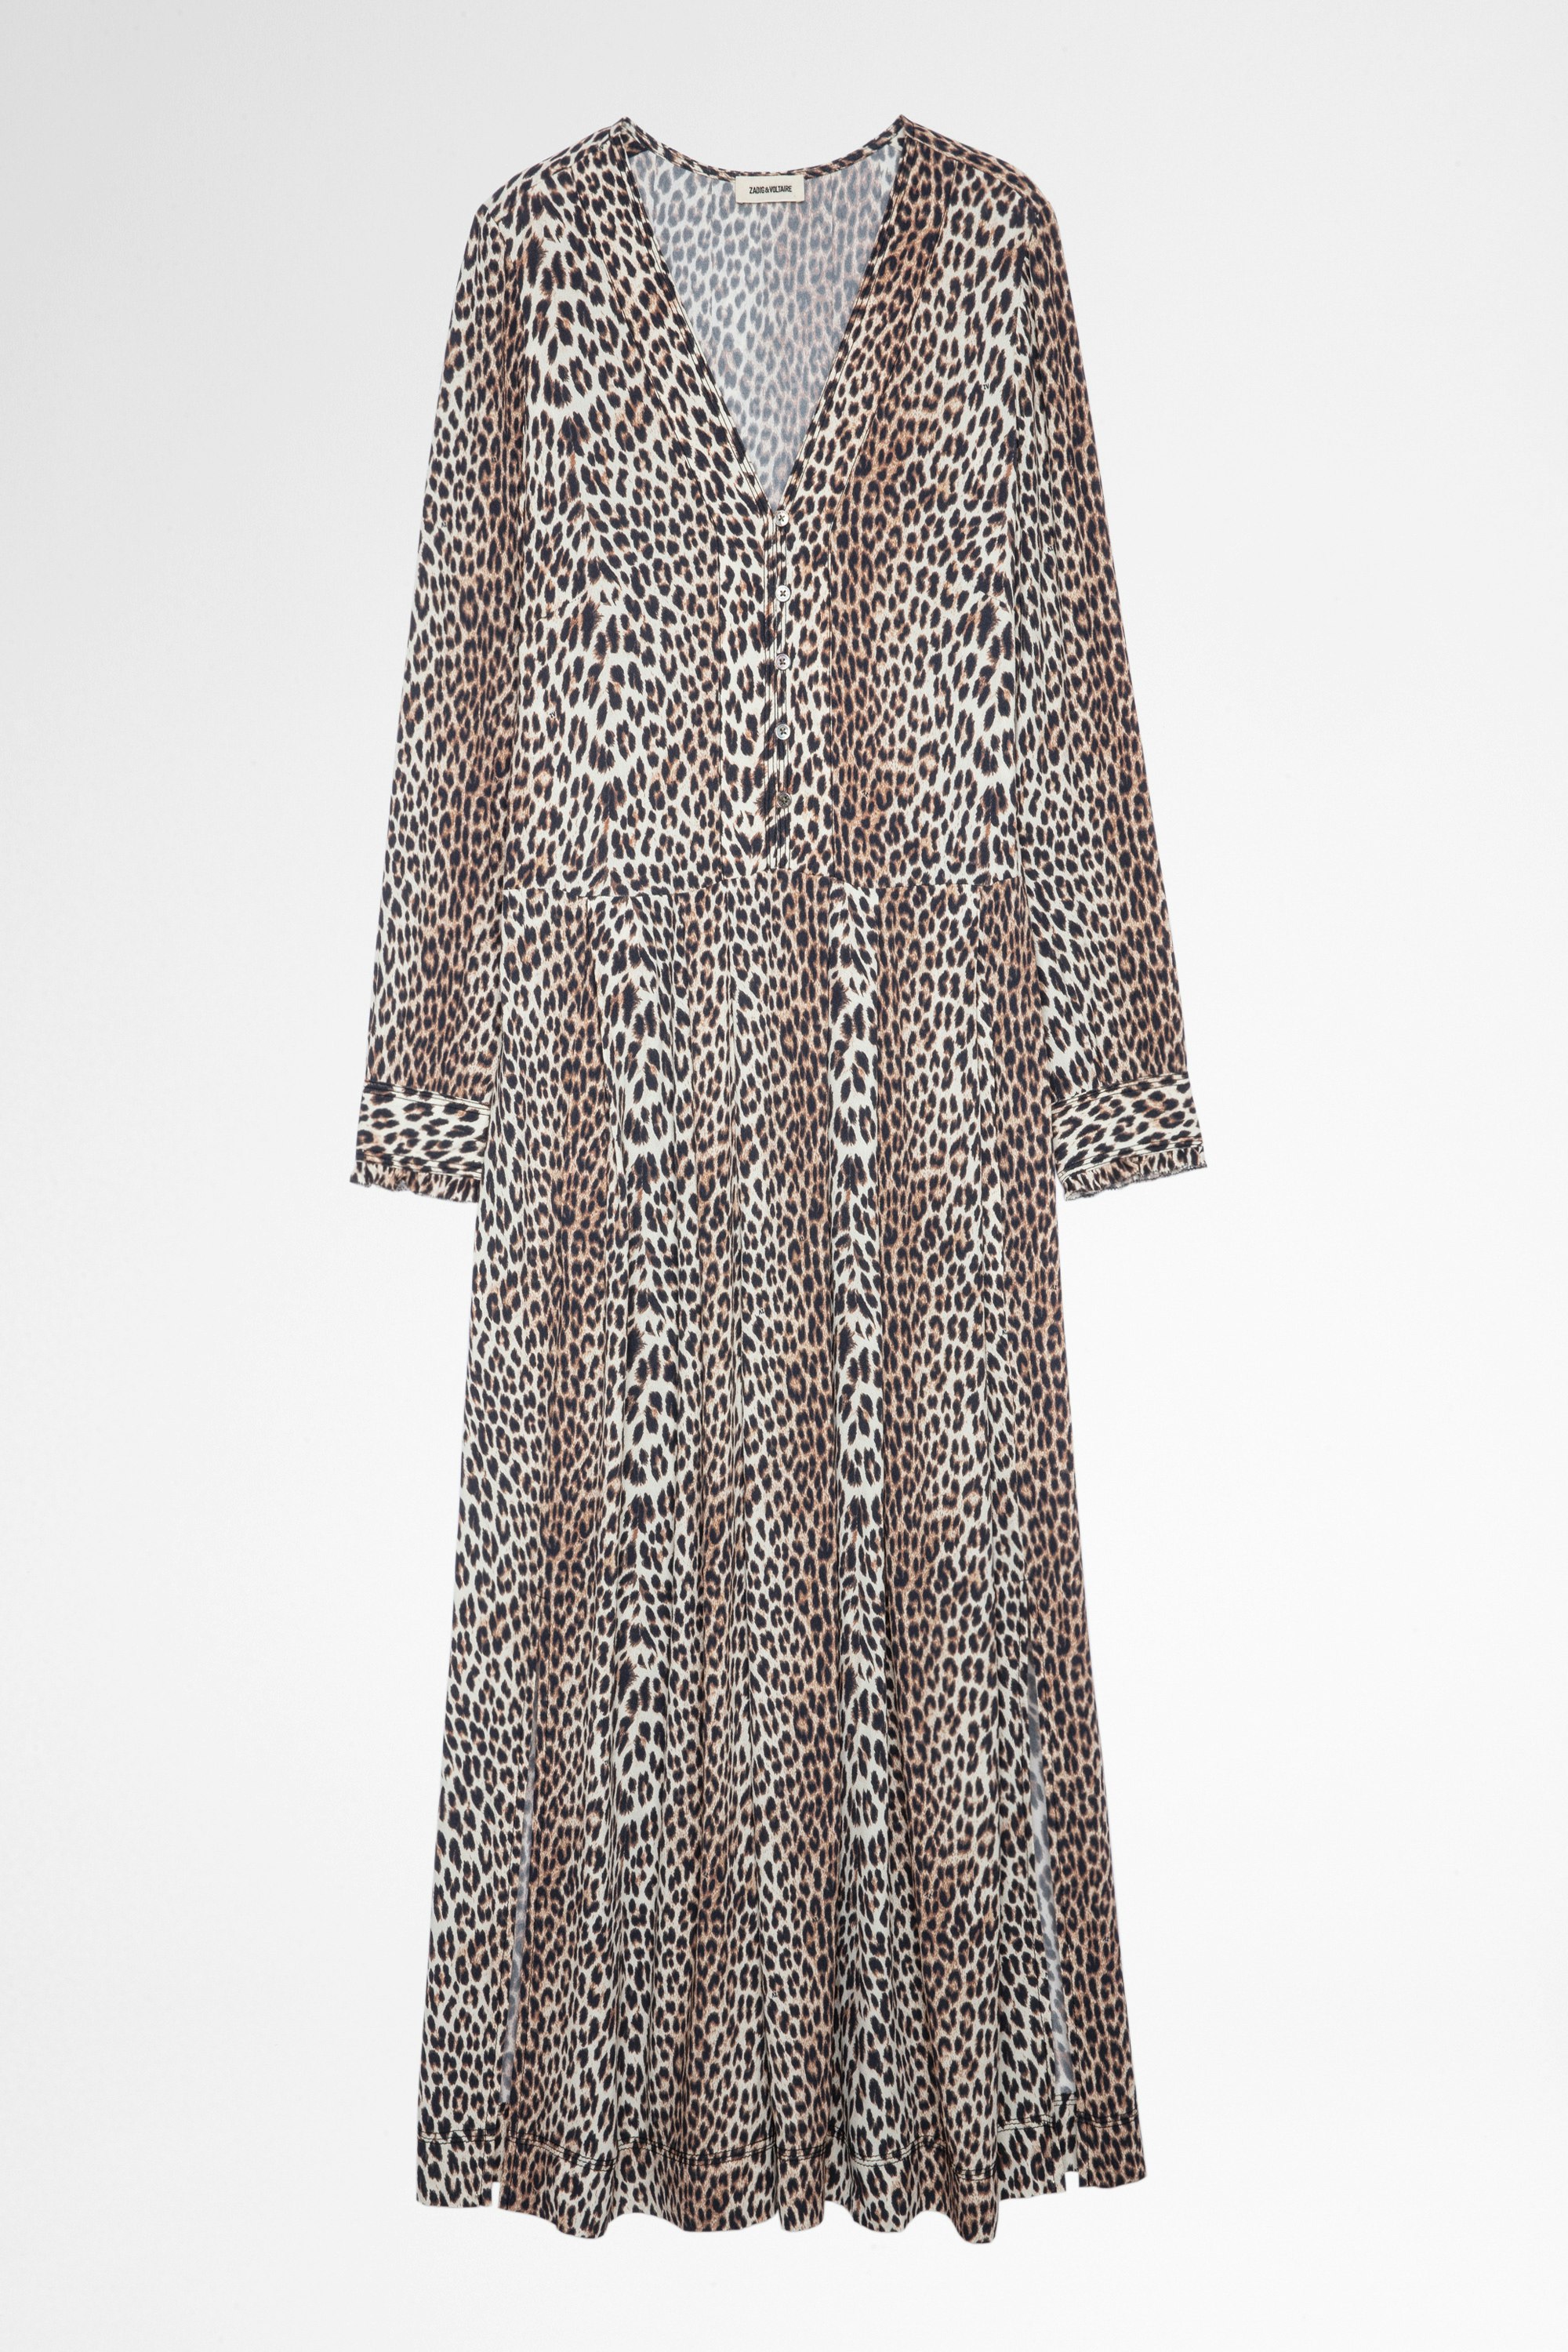 Robe Roux Leopard Robe longue imprimé léopard Femme